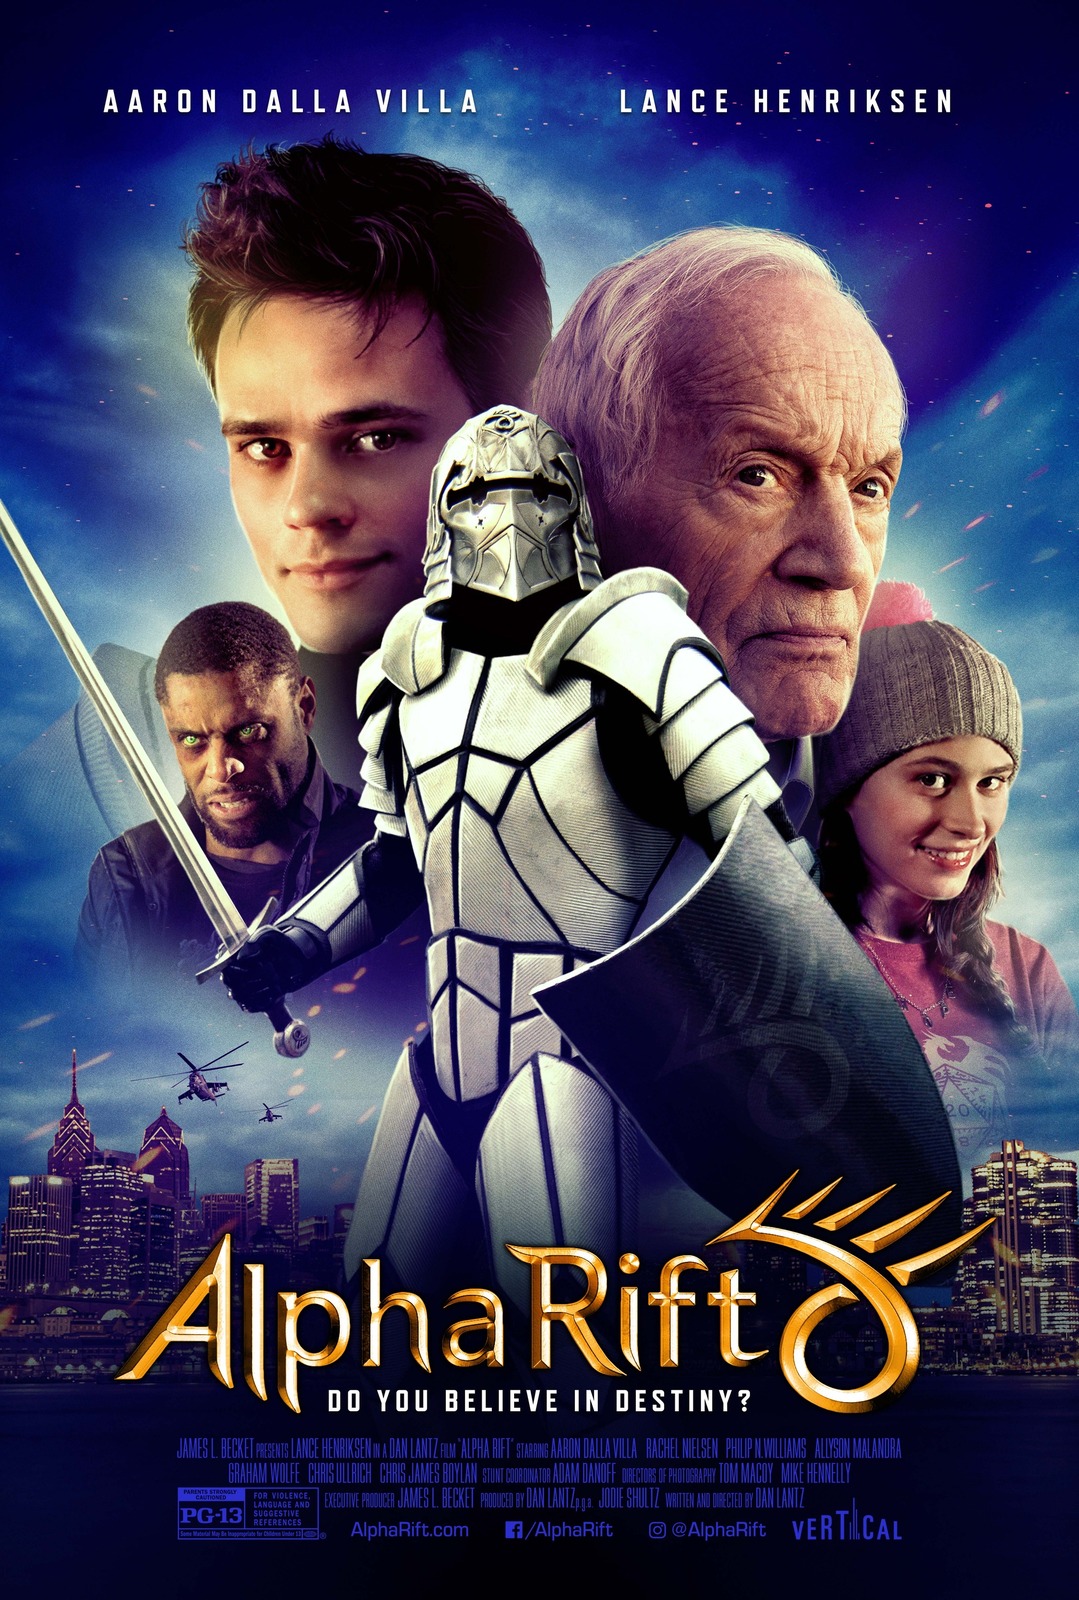 Alpha Rift Movie Poster Dan Lantz Art Film Print Size 11x17 24x36 27x40 32x48